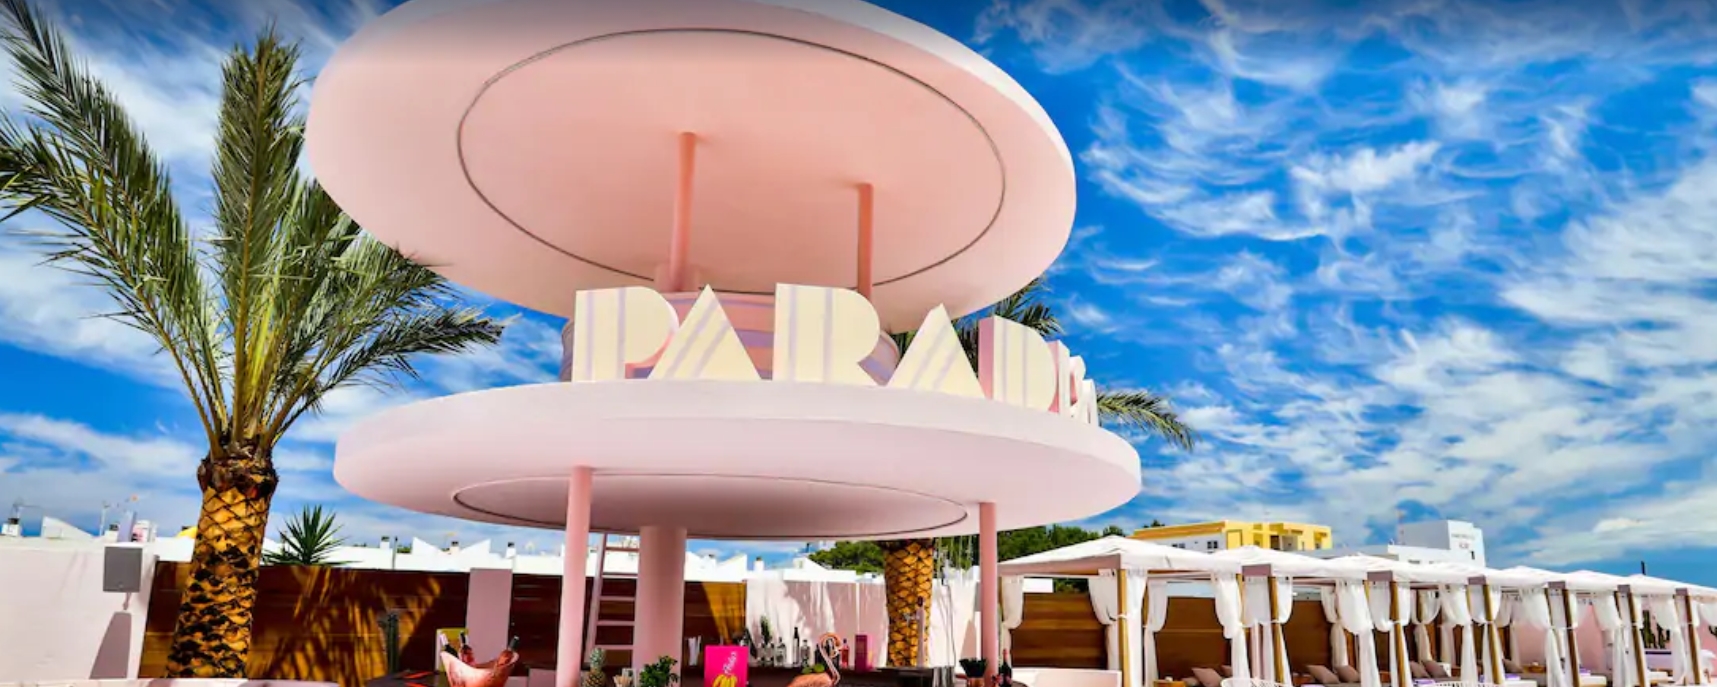 paradiso art hotel ibiza: el hotel retro art decó más rosa del mundo 1